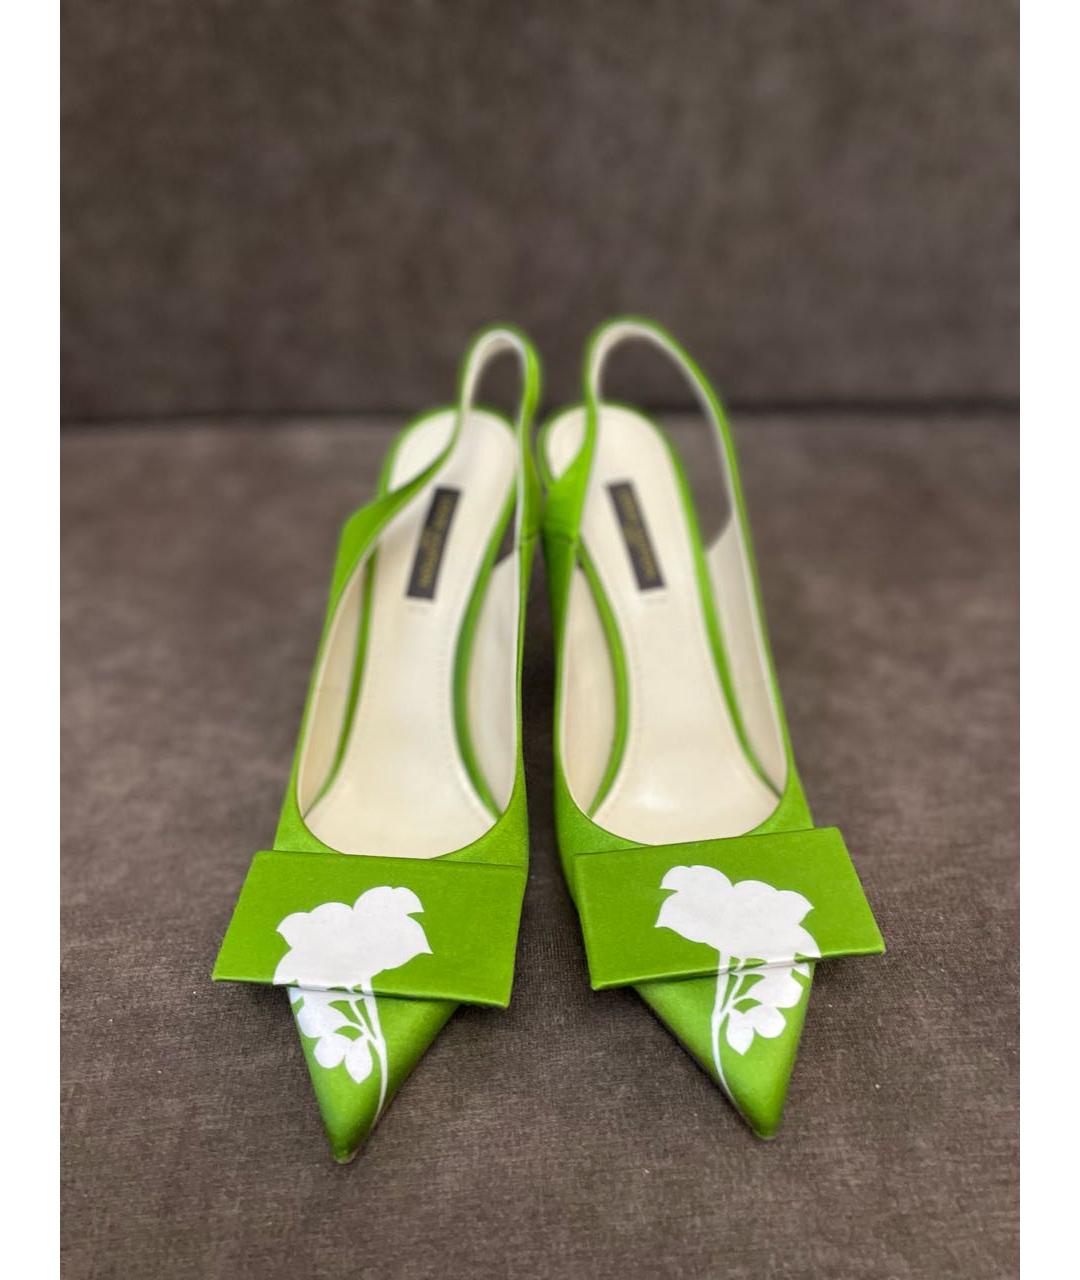 LOUIS VUITTON PRE-OWNED Зеленые текстильные туфли, фото 2